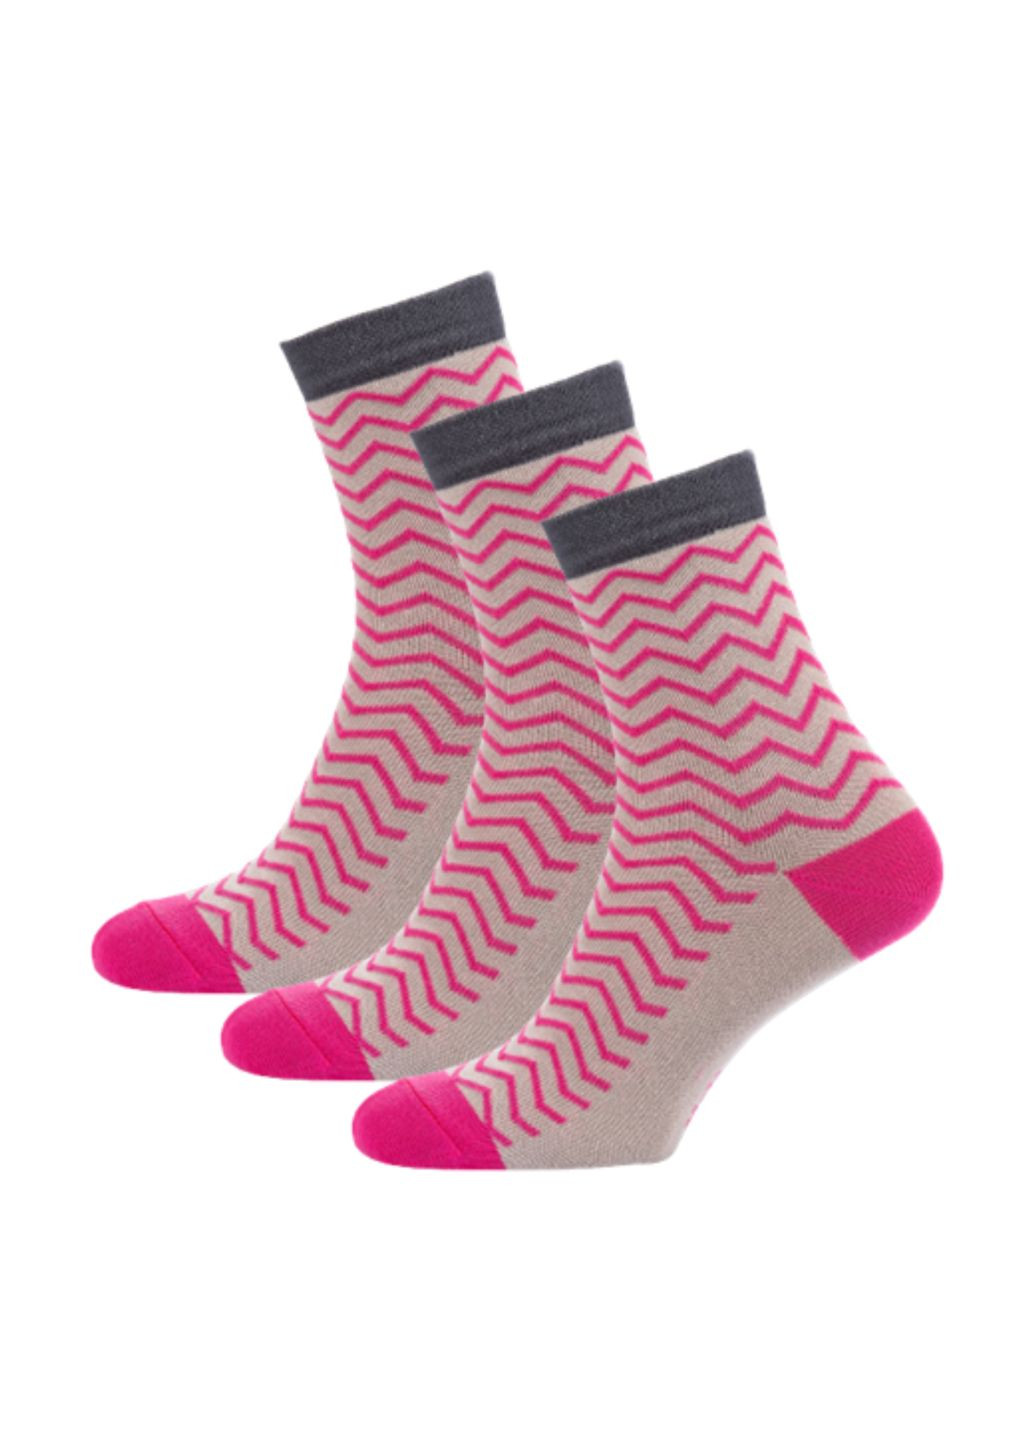 RFT Шкарпетки жіночі високі. Набір (3 шт.) Siela rt1312-070_набори (260063114)